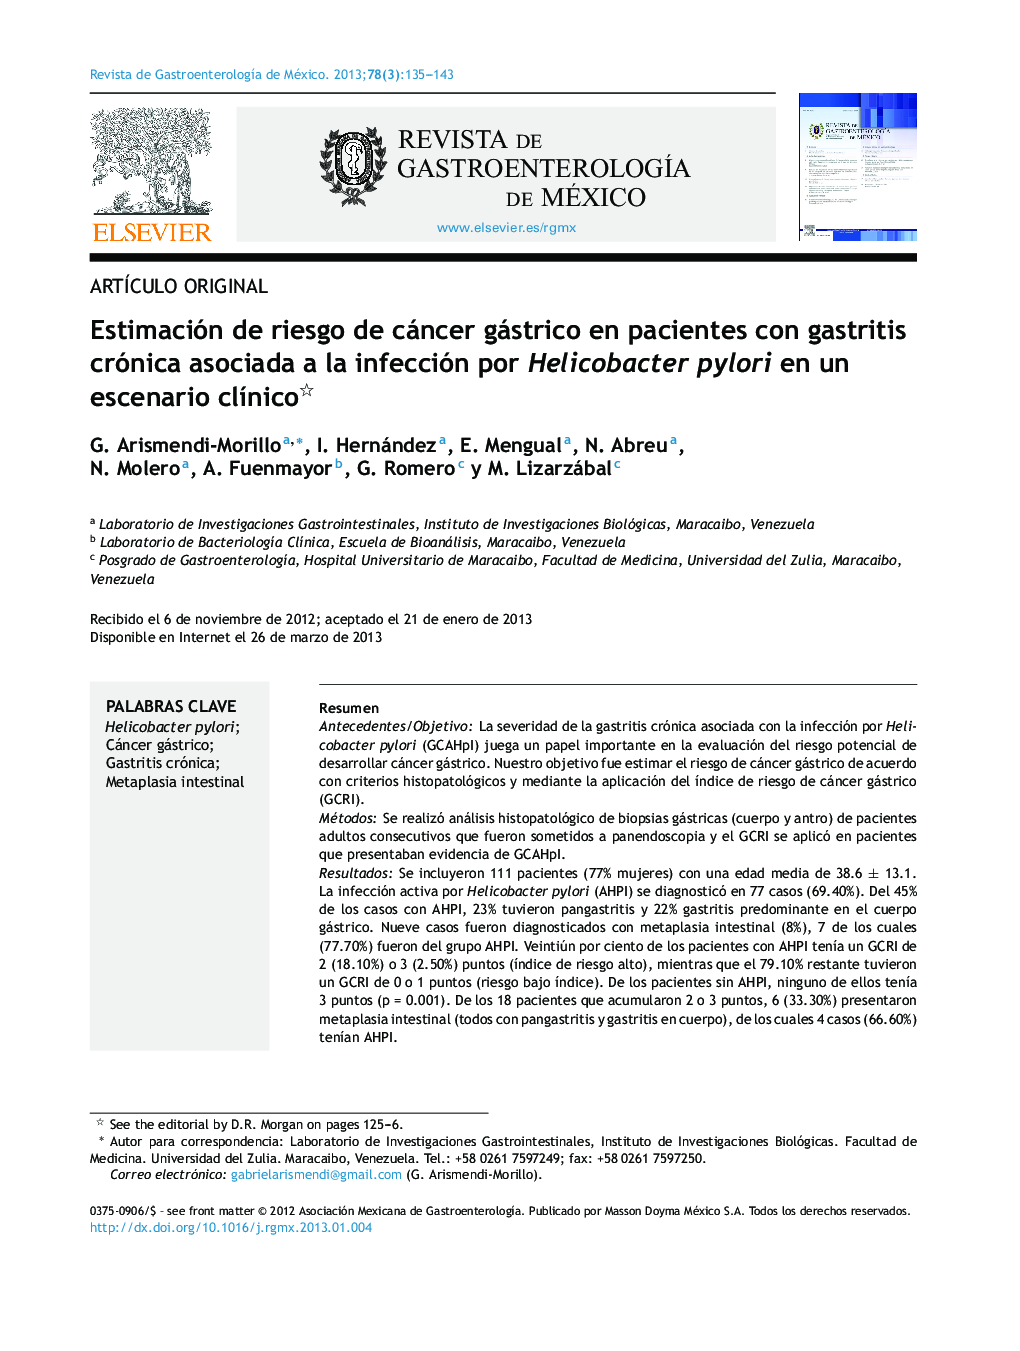 Estimación de riesgo de cáncer gástrico en pacientes con gastritis crónica asociada a la infección por Helicobacter pylori en un escenario clínico 